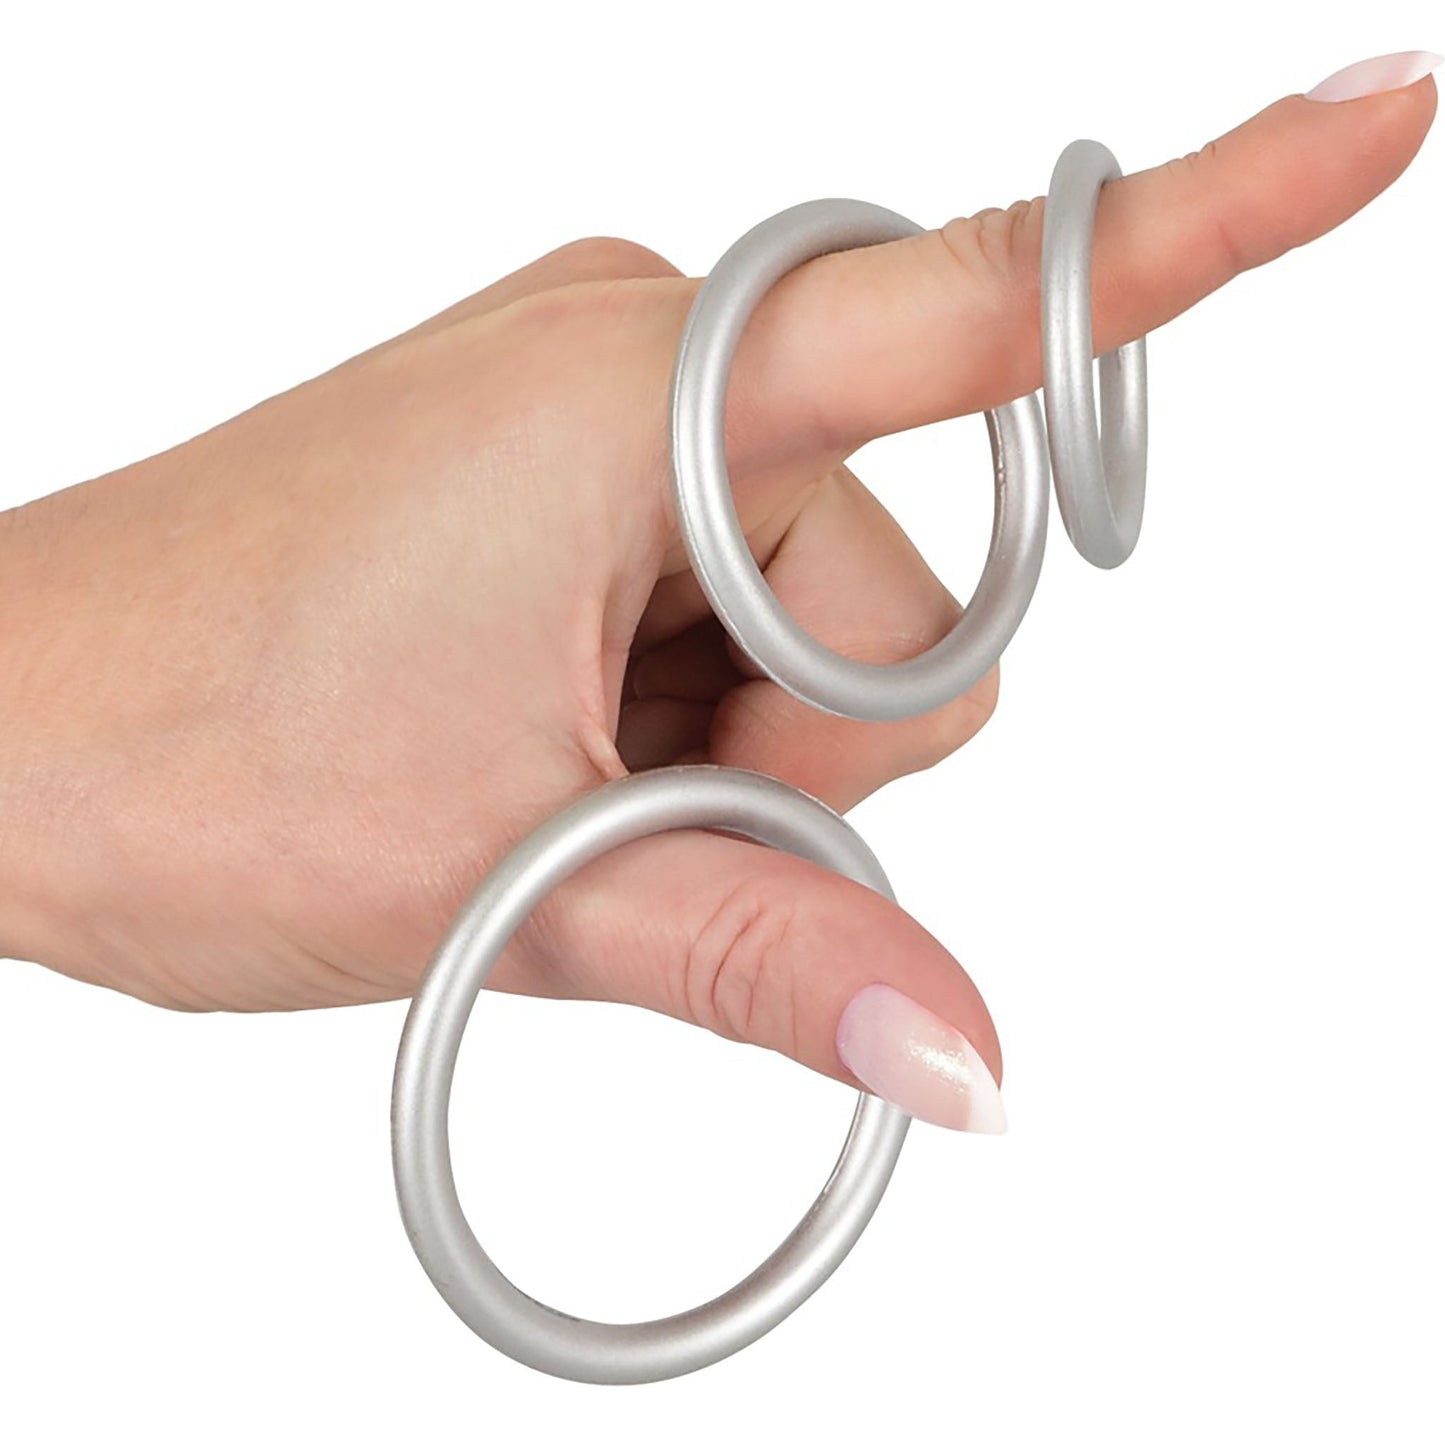 Metallic Silicone Cock Ring Set, Penisringe mit zwei Händen gehalten